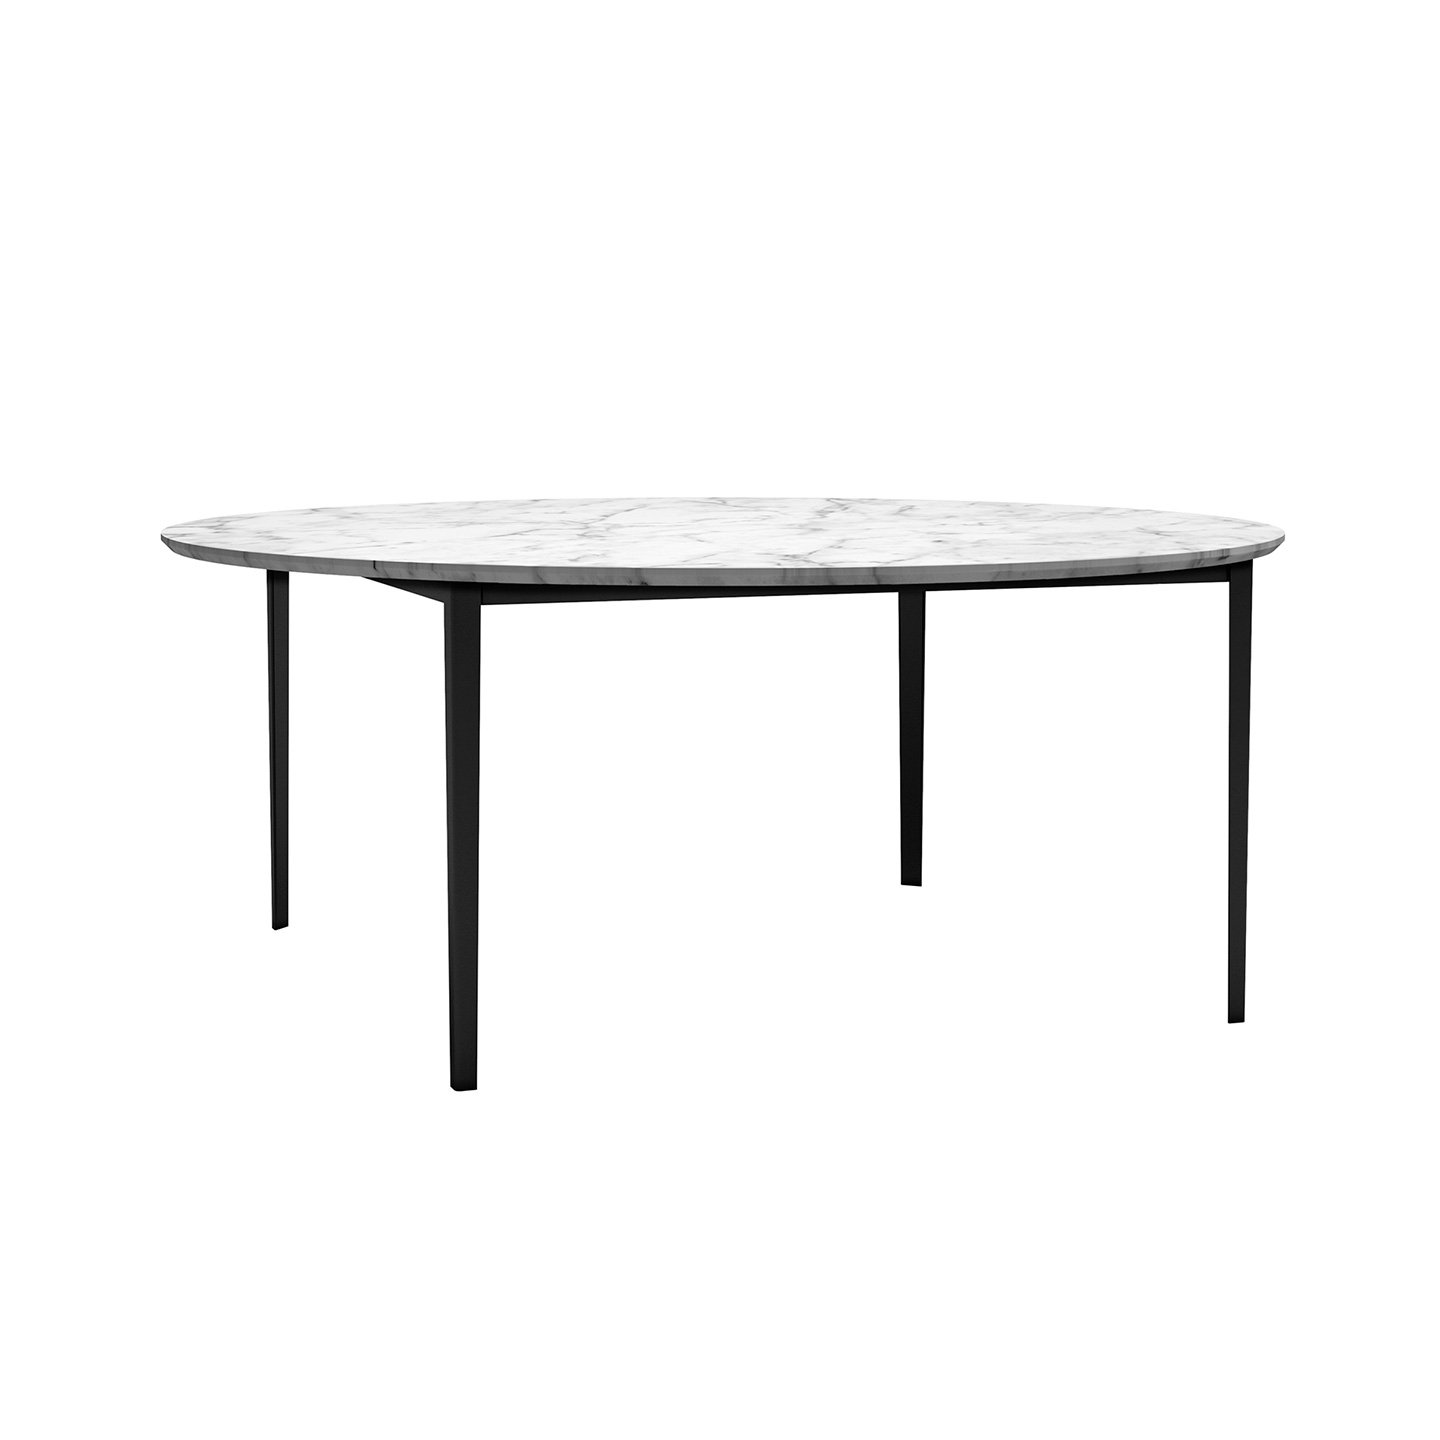 OpenUp系列桌子尽显纯粹与轻便。通过巧用线条、细节和阴影，这款桌子适合餐厅或现代和非传统的起居区。